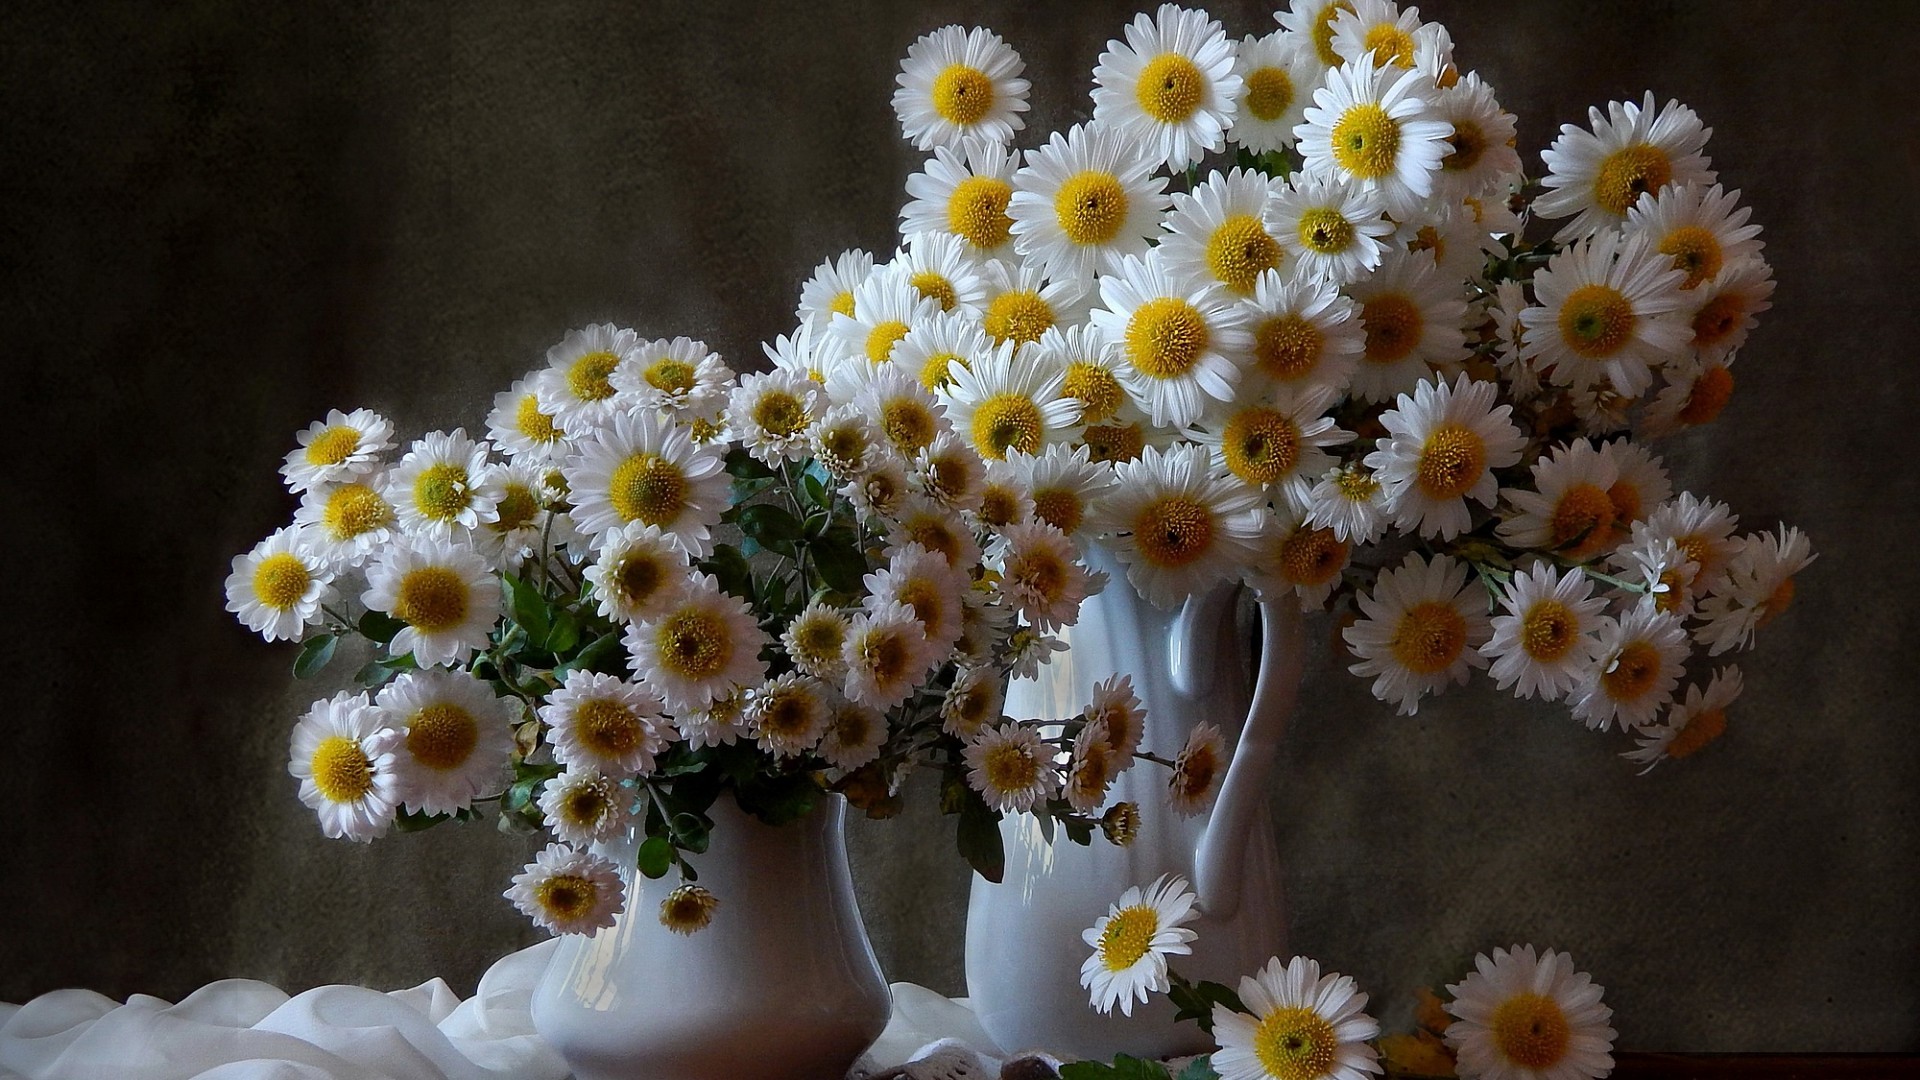 Цветы / Flowers / Gullar / Гуллар / гул / gul / gullar - atirgul - guli - lola - lola gul - binafsha gul - Gullarning turlari qanday - gullar nomi